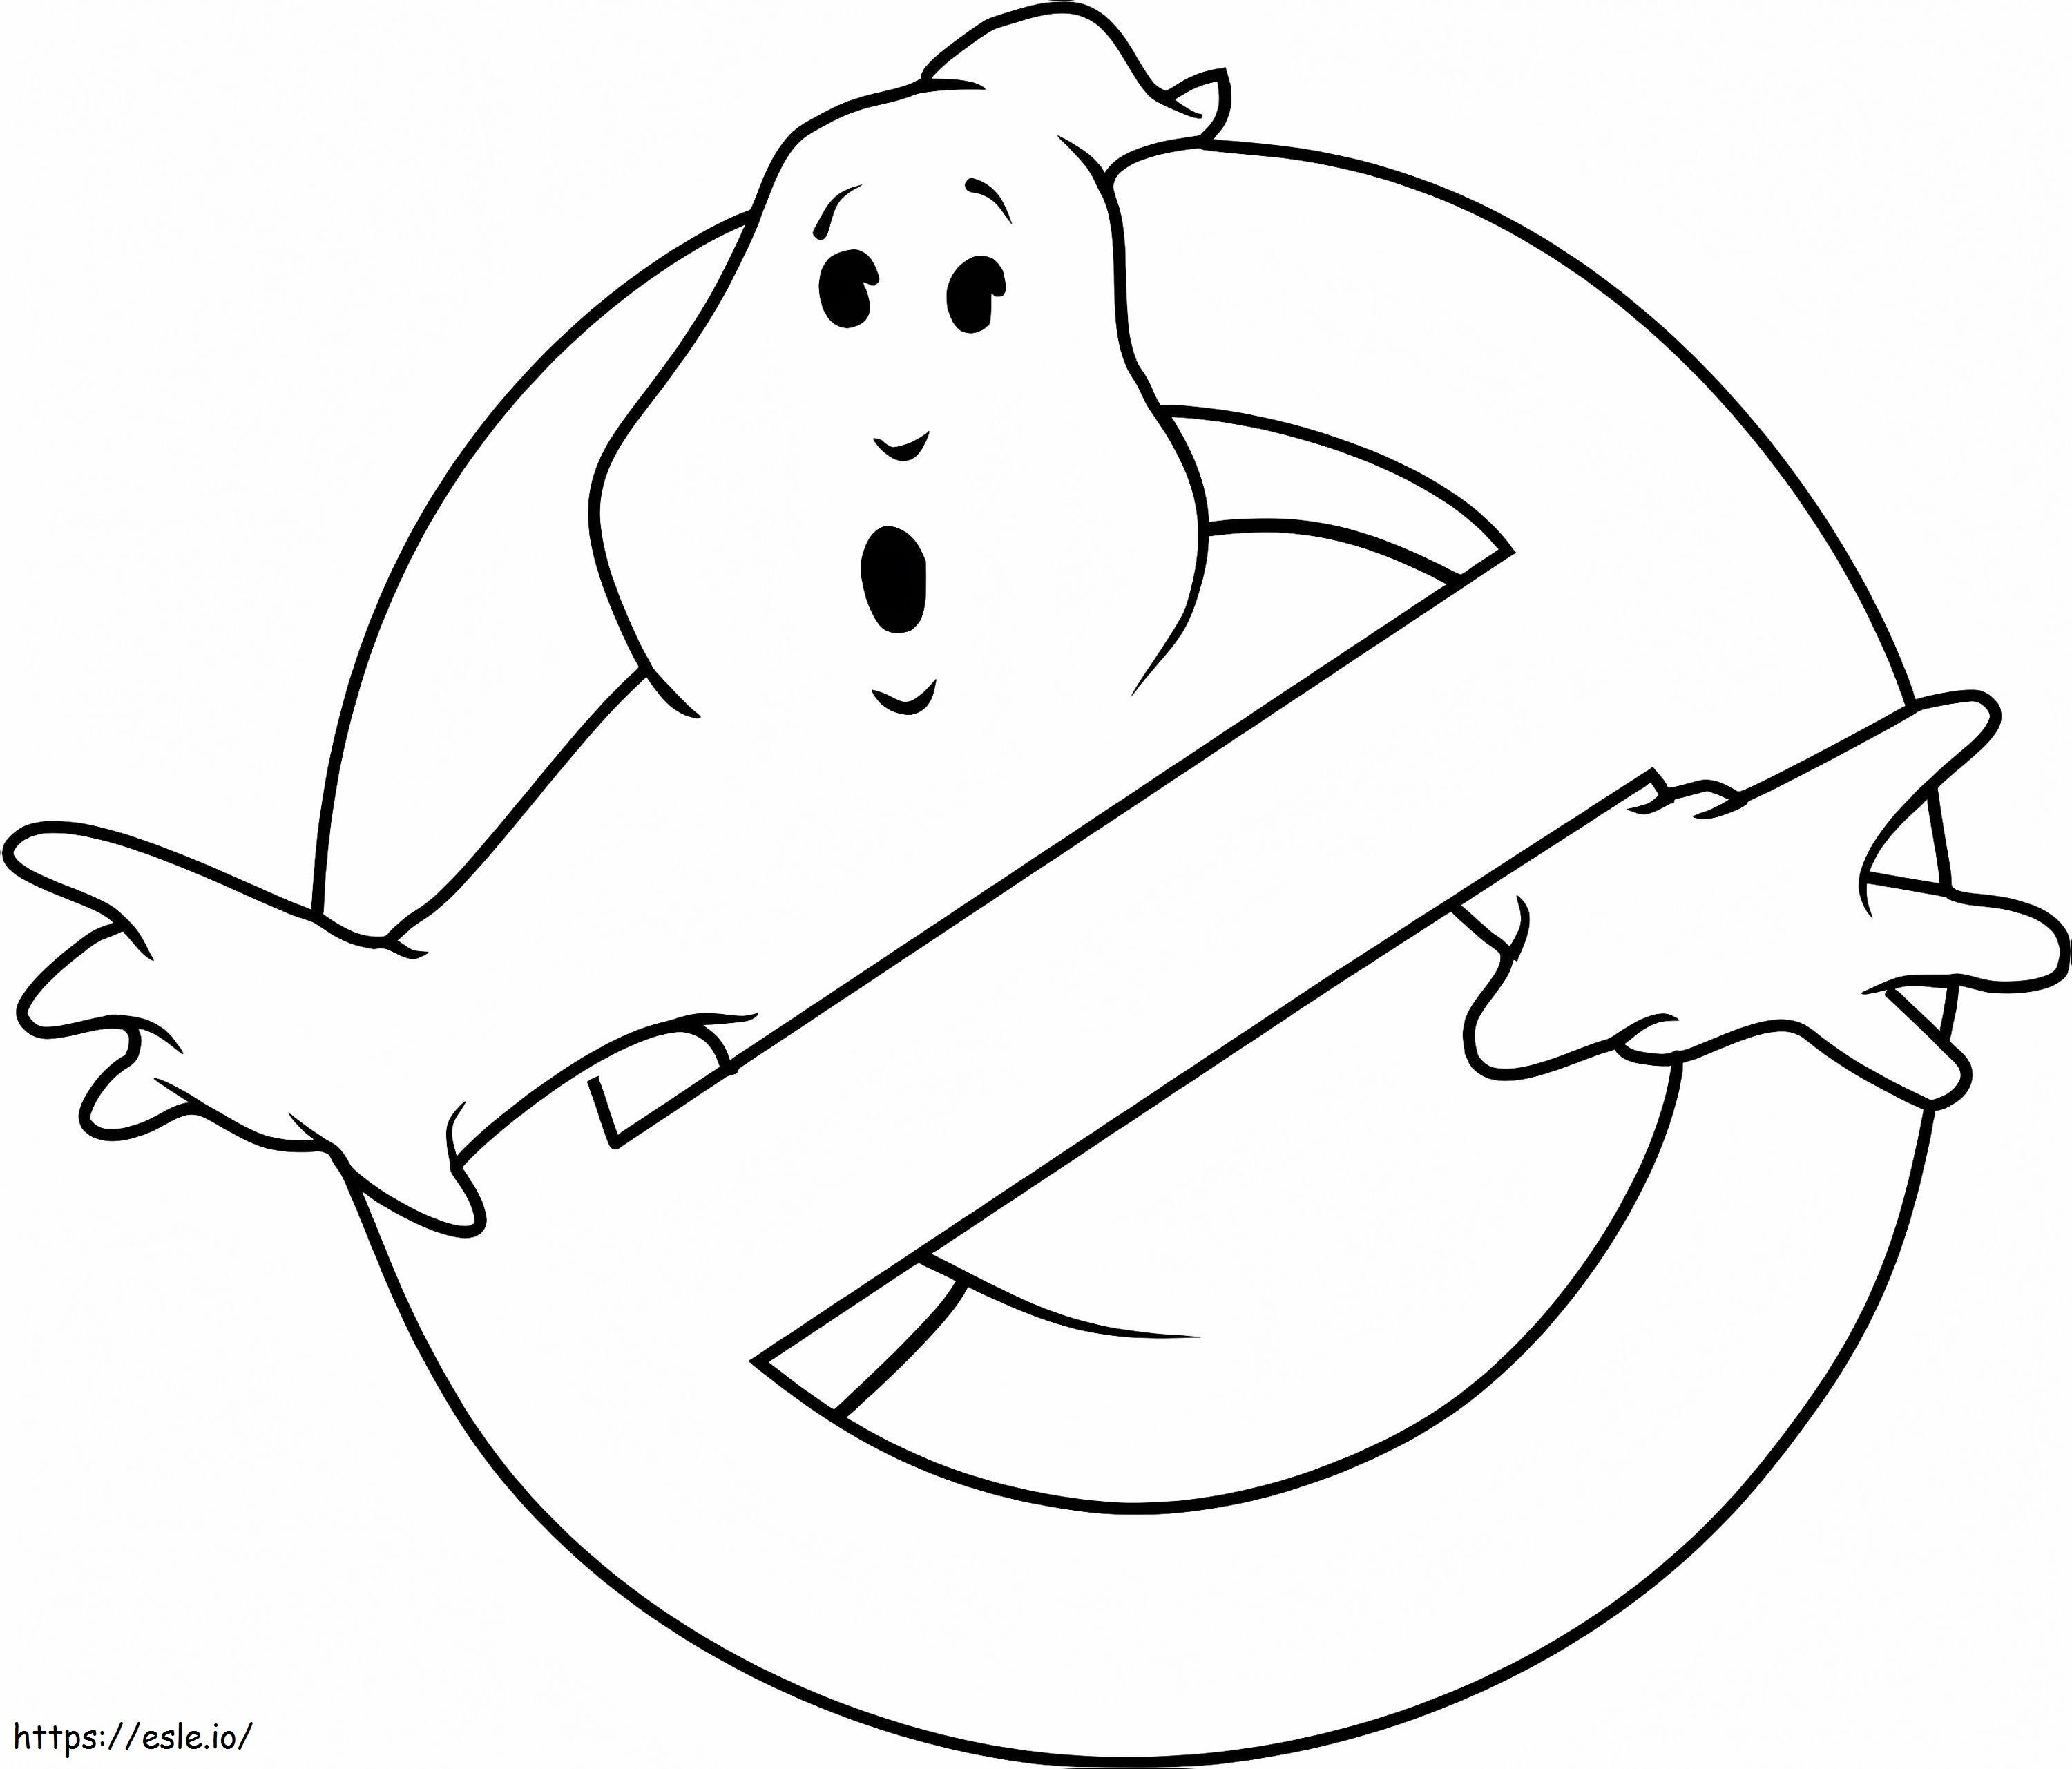 Ghostbusters-logo kleurplaat kleurplaat